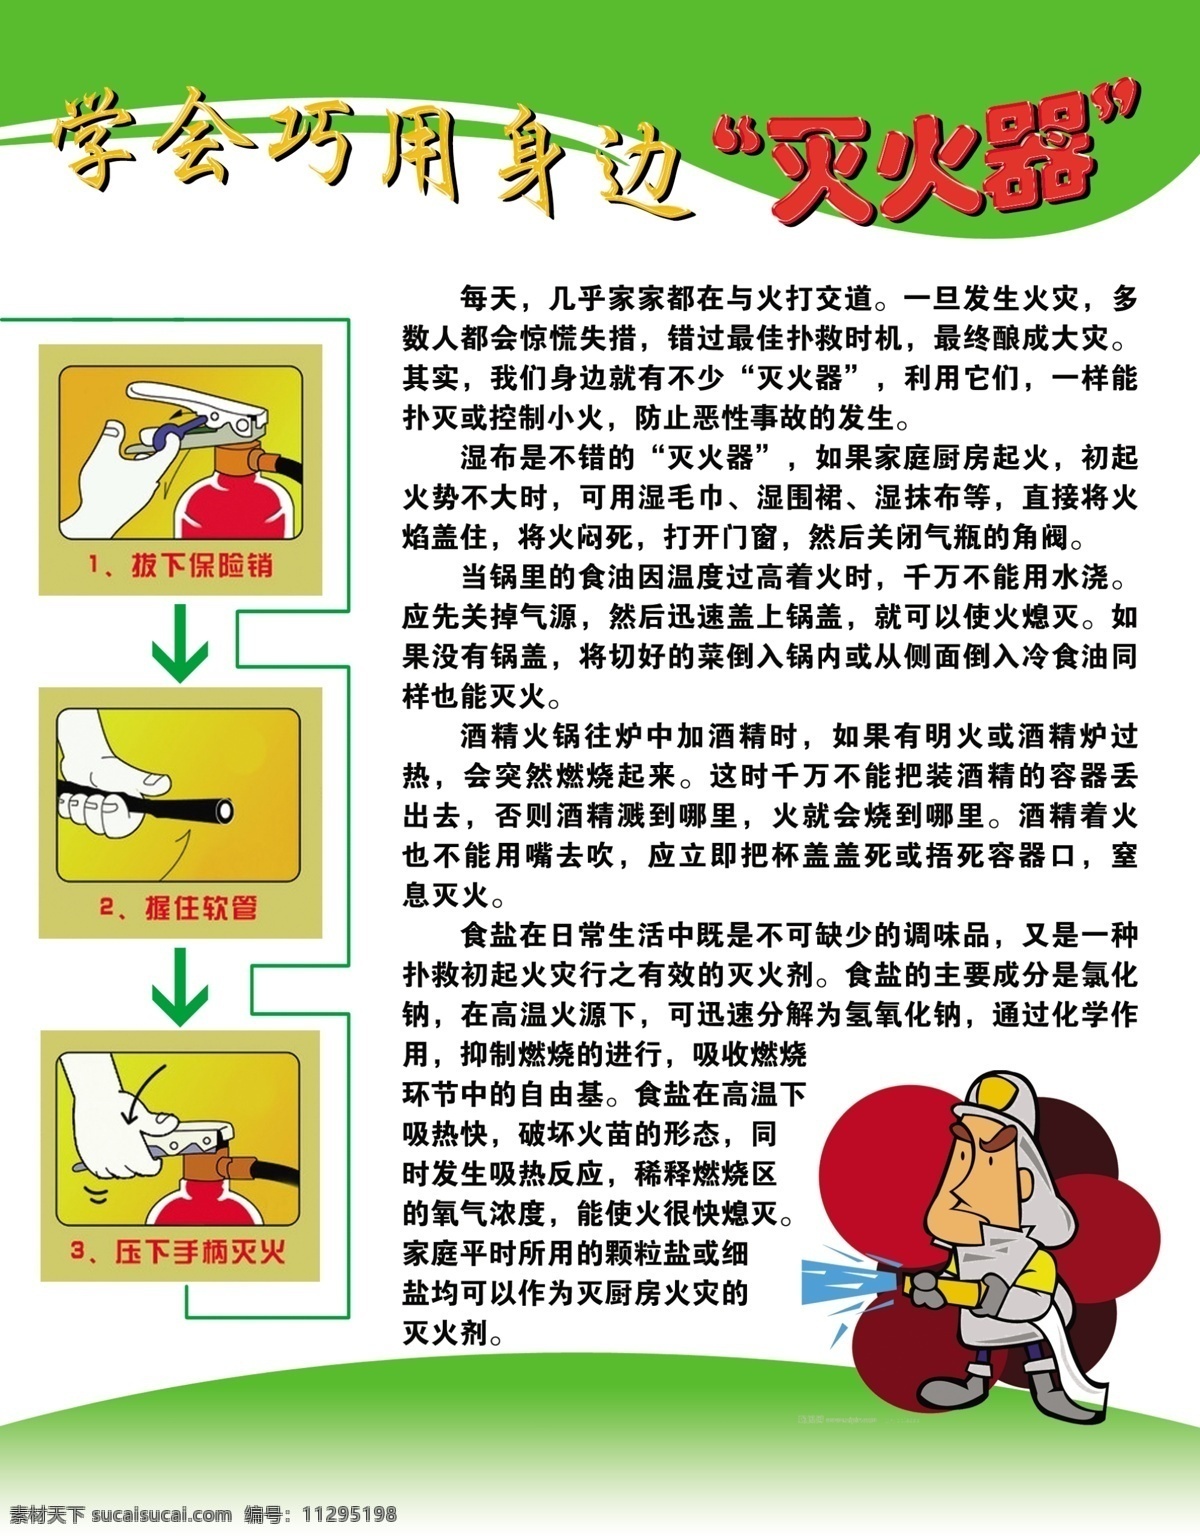 消防 灭火器 海报 使用 过程 卡通消防卫士 消防知识 海报展板 广告设计模板 源文件